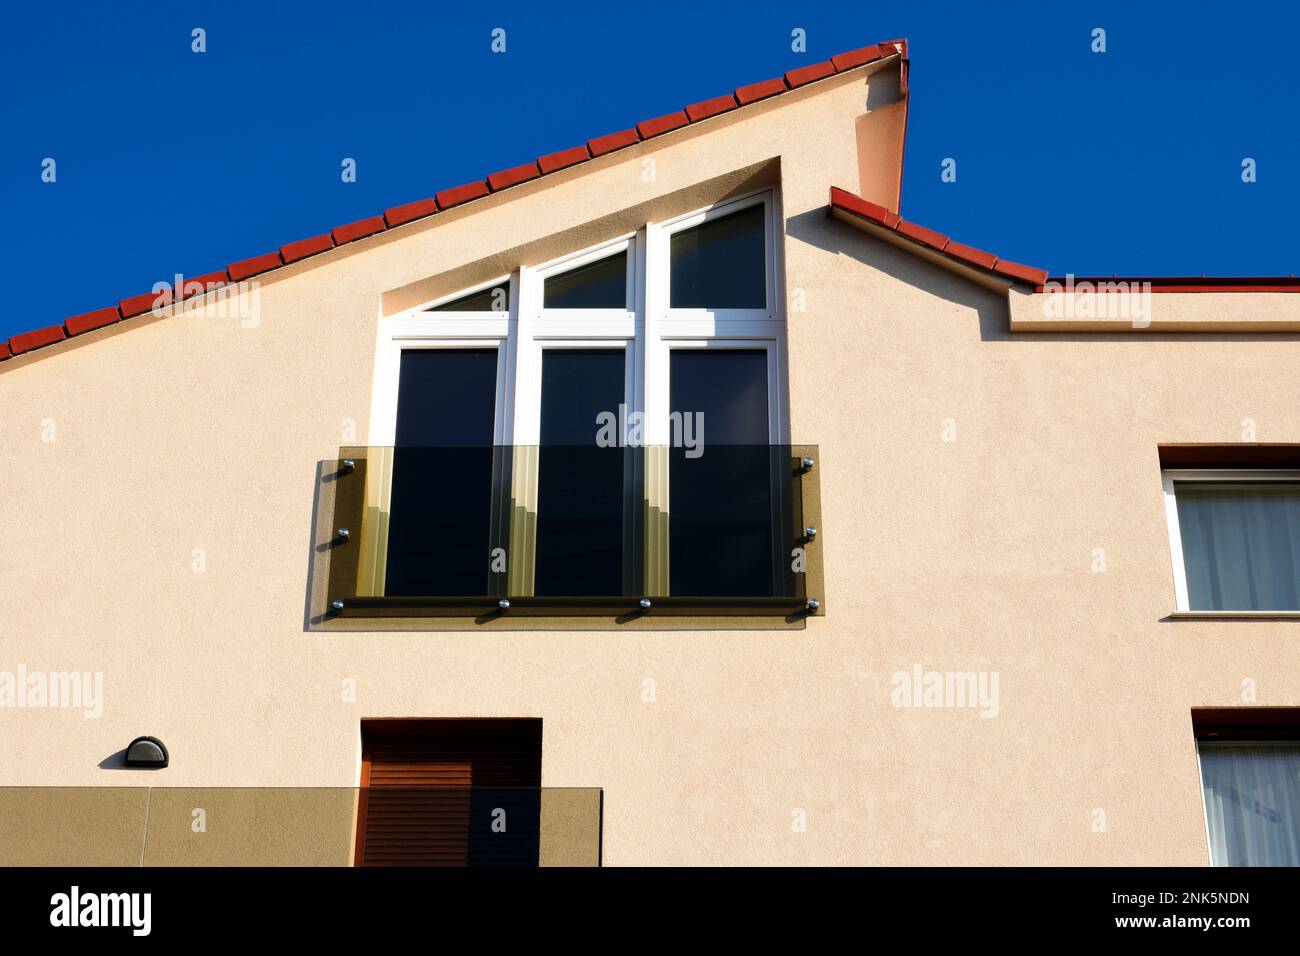 Glasbalustrade auf einem kleinen französischen Balkon mit großen trapezförmigen Fenstern. Stuckfassade. Abgeschrägtes Tondach. Modernes Wohnarchitekturkonzept Stockfoto